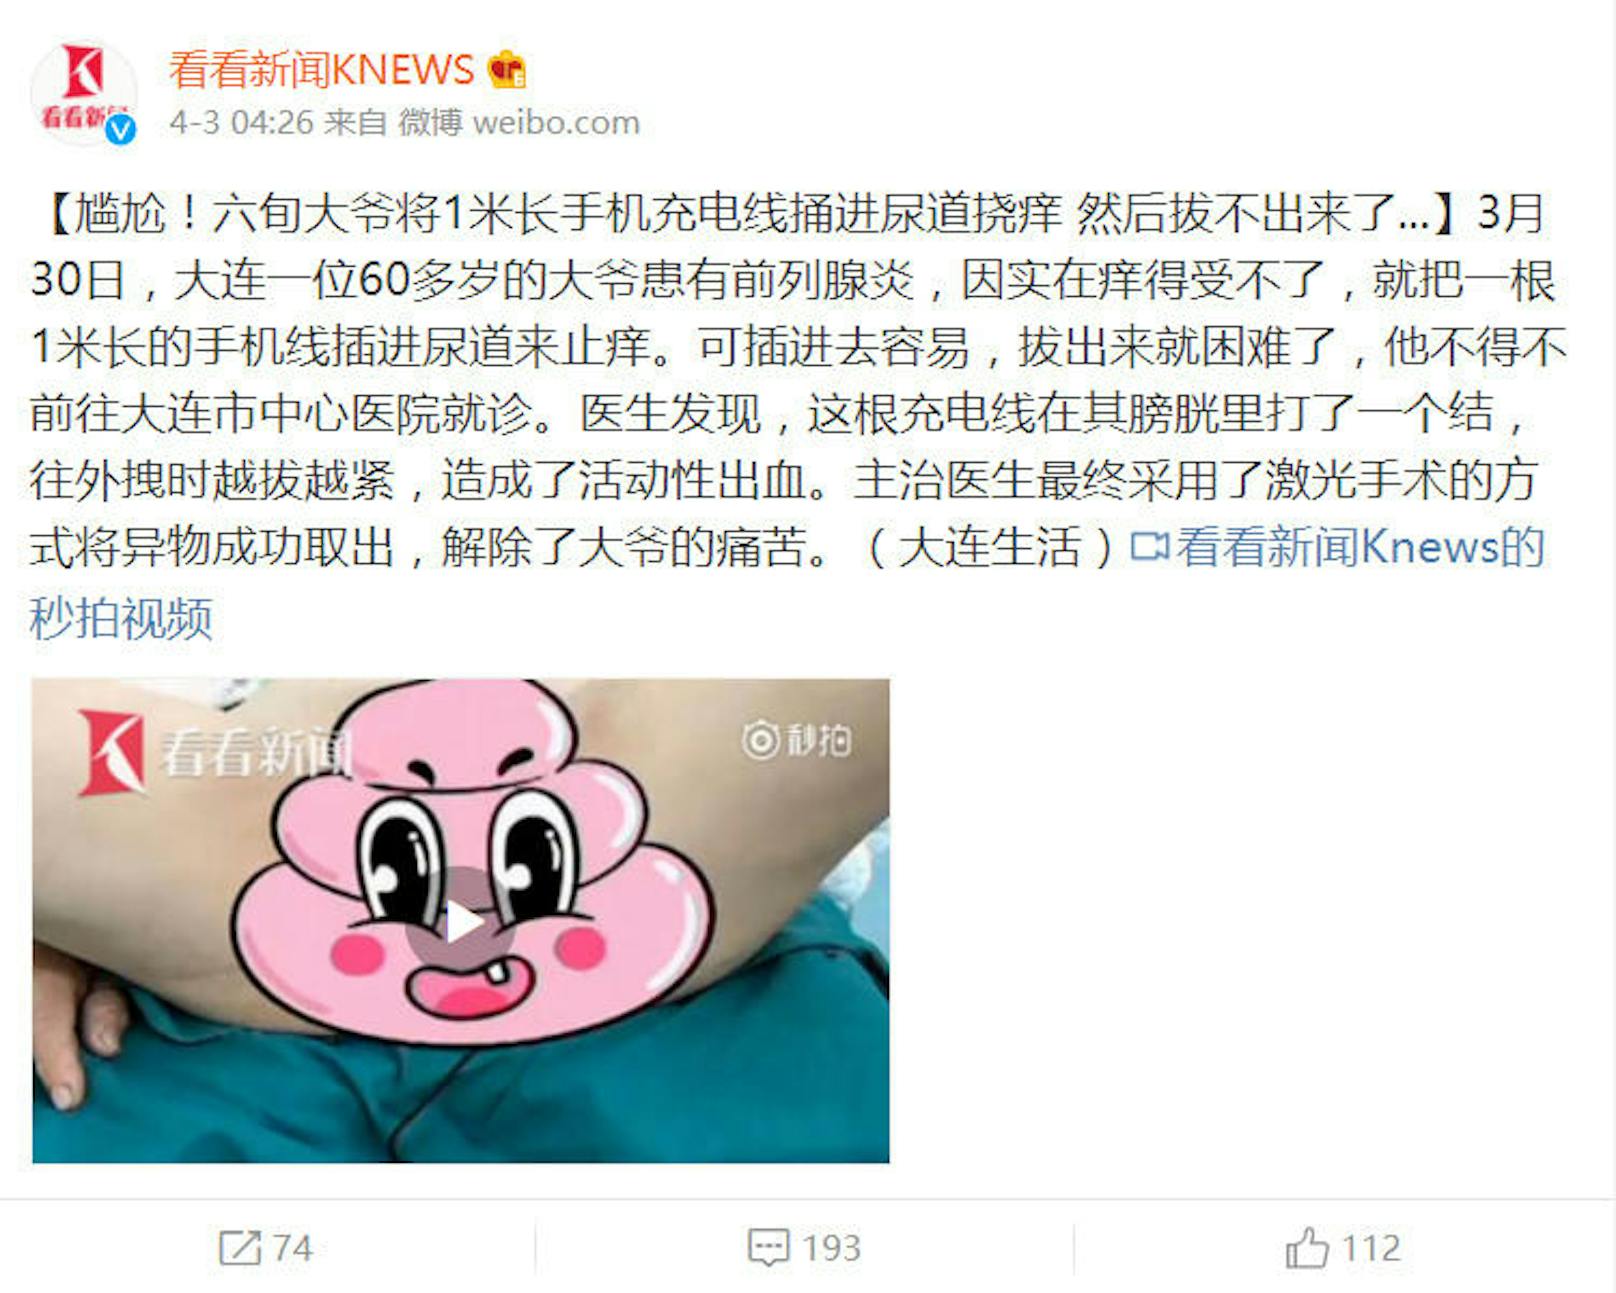 Das chinesische Portal "KNews" berichtete über den bizarren Fall.